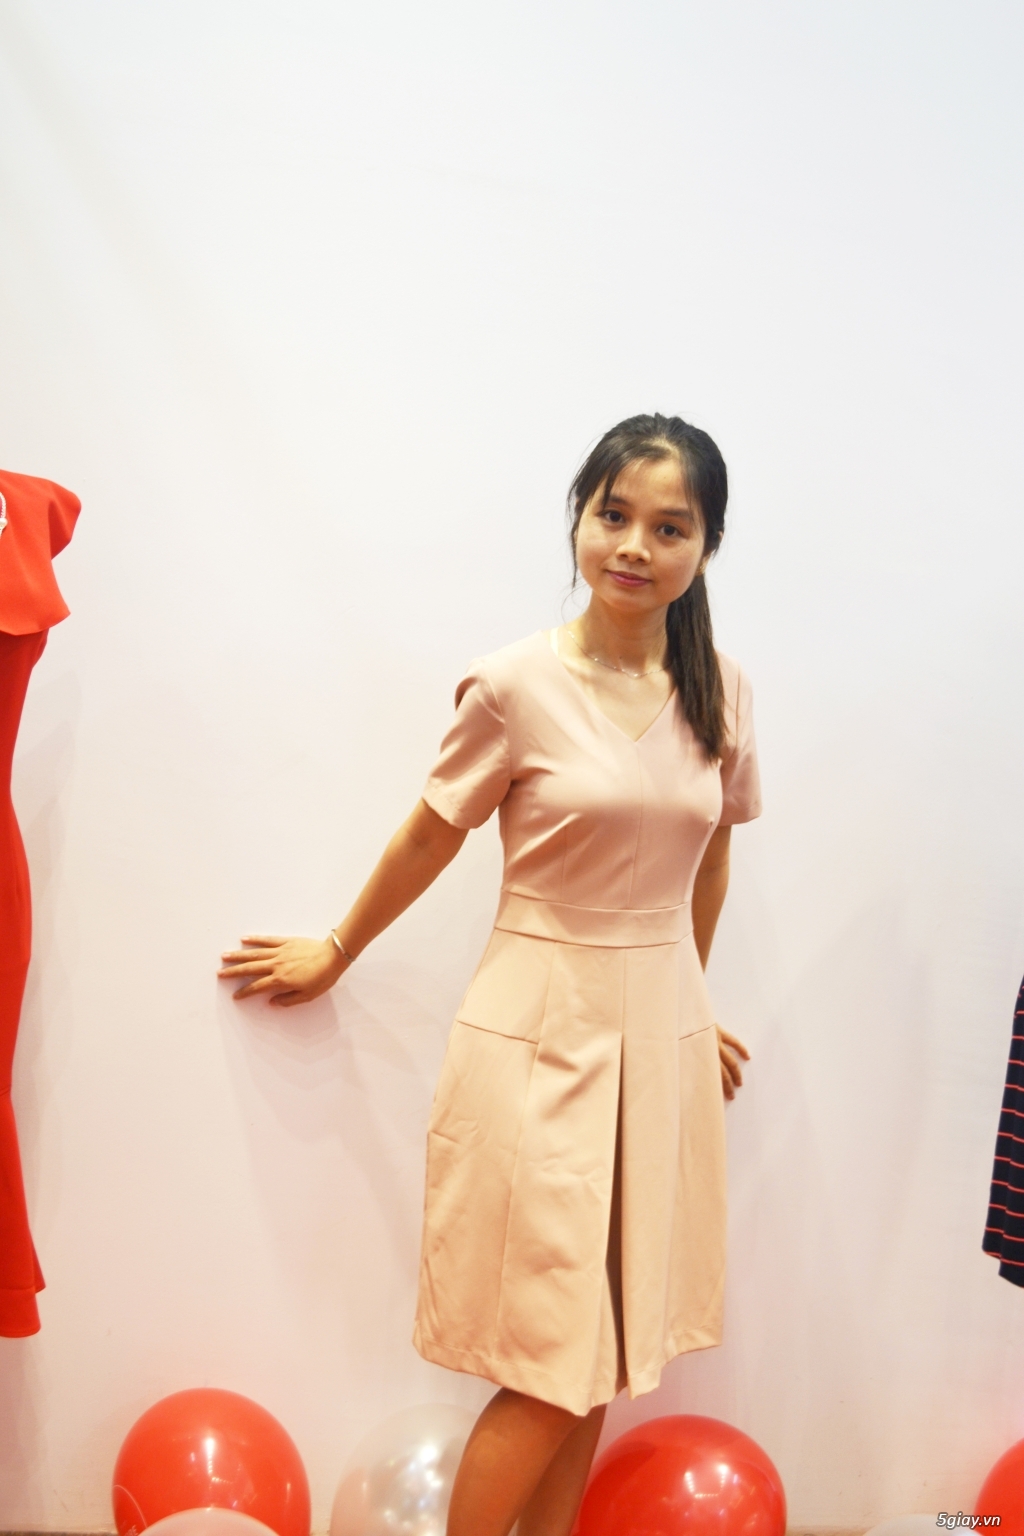 Pi STORE: Thương hiệu quần áo nữ cao cấp cho các tín đồ thời trang - 20